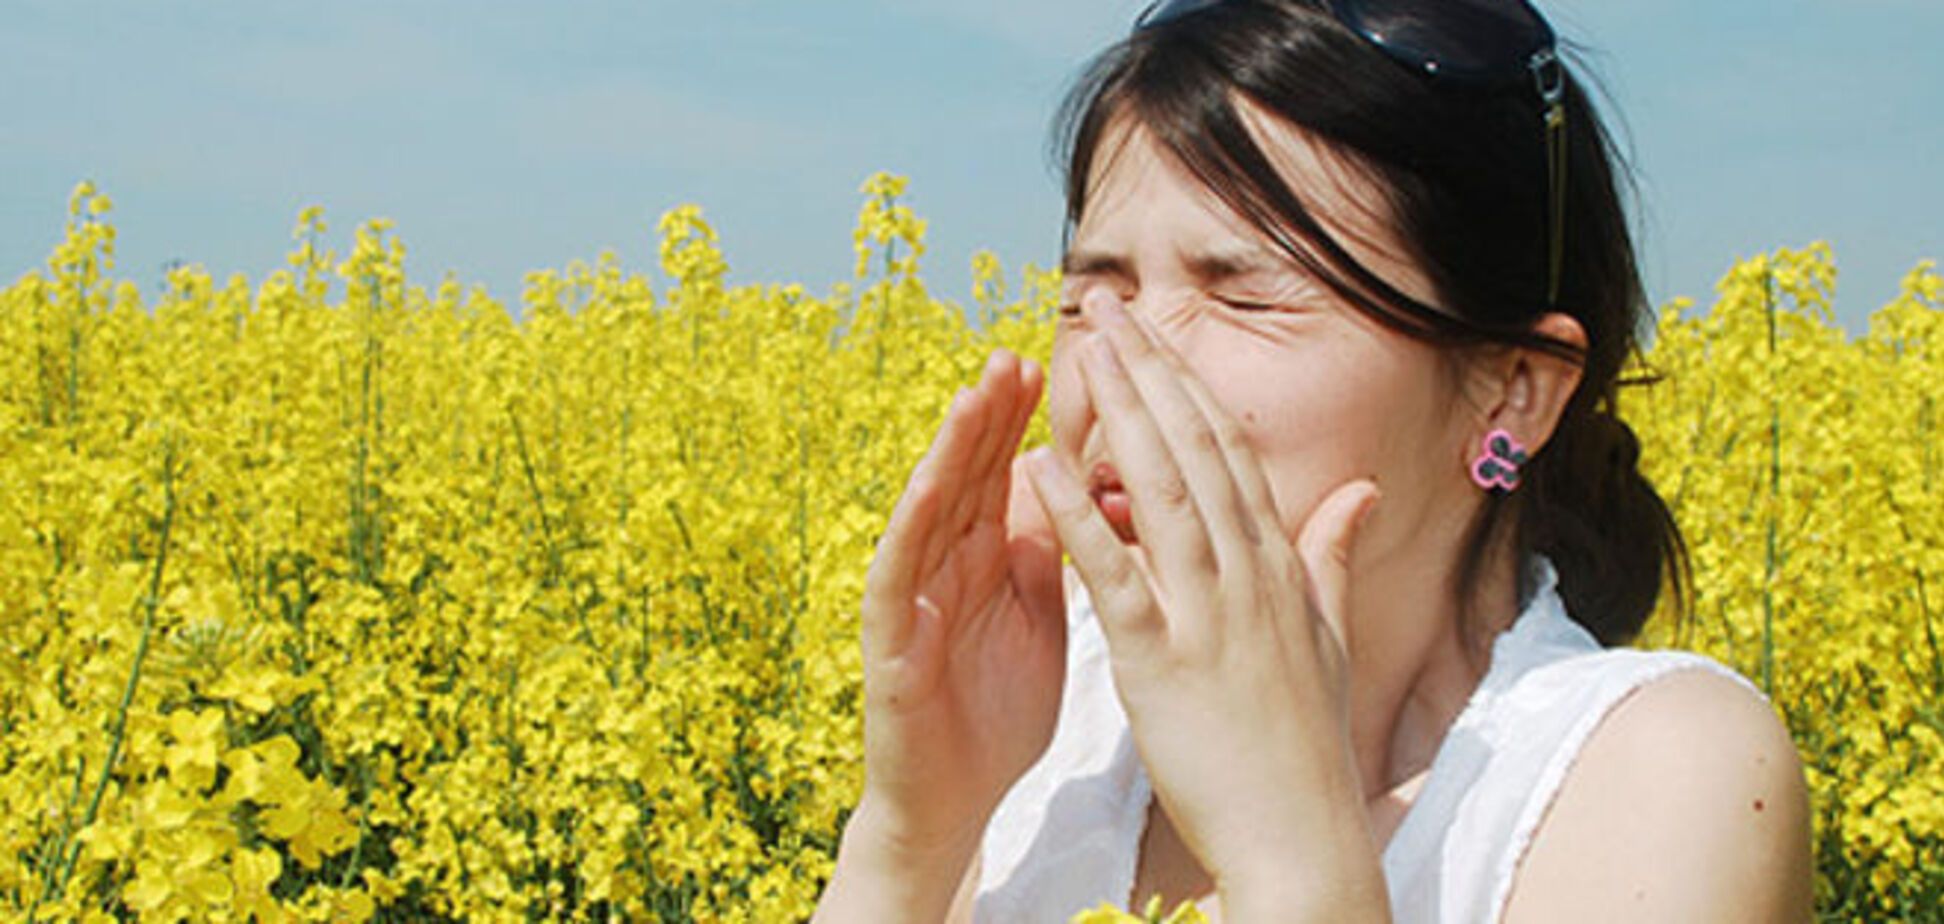 Проверенные рецепты для лечения аллергии народными средствами